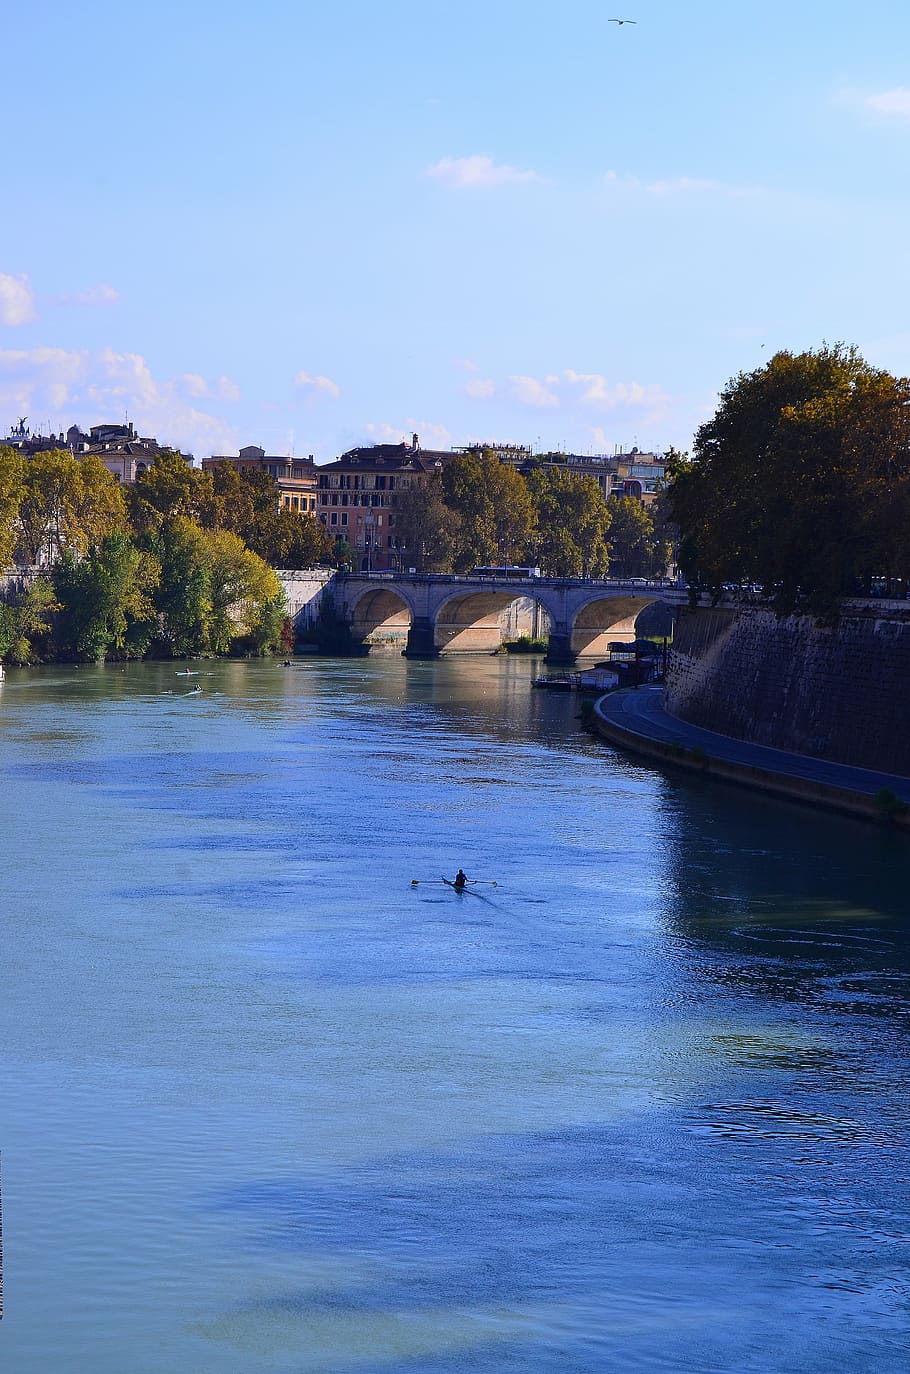 Roma, Tiber, jembatan, sungai, musim panas, hari, hijau, perahu, tukang perahu, pemandangan